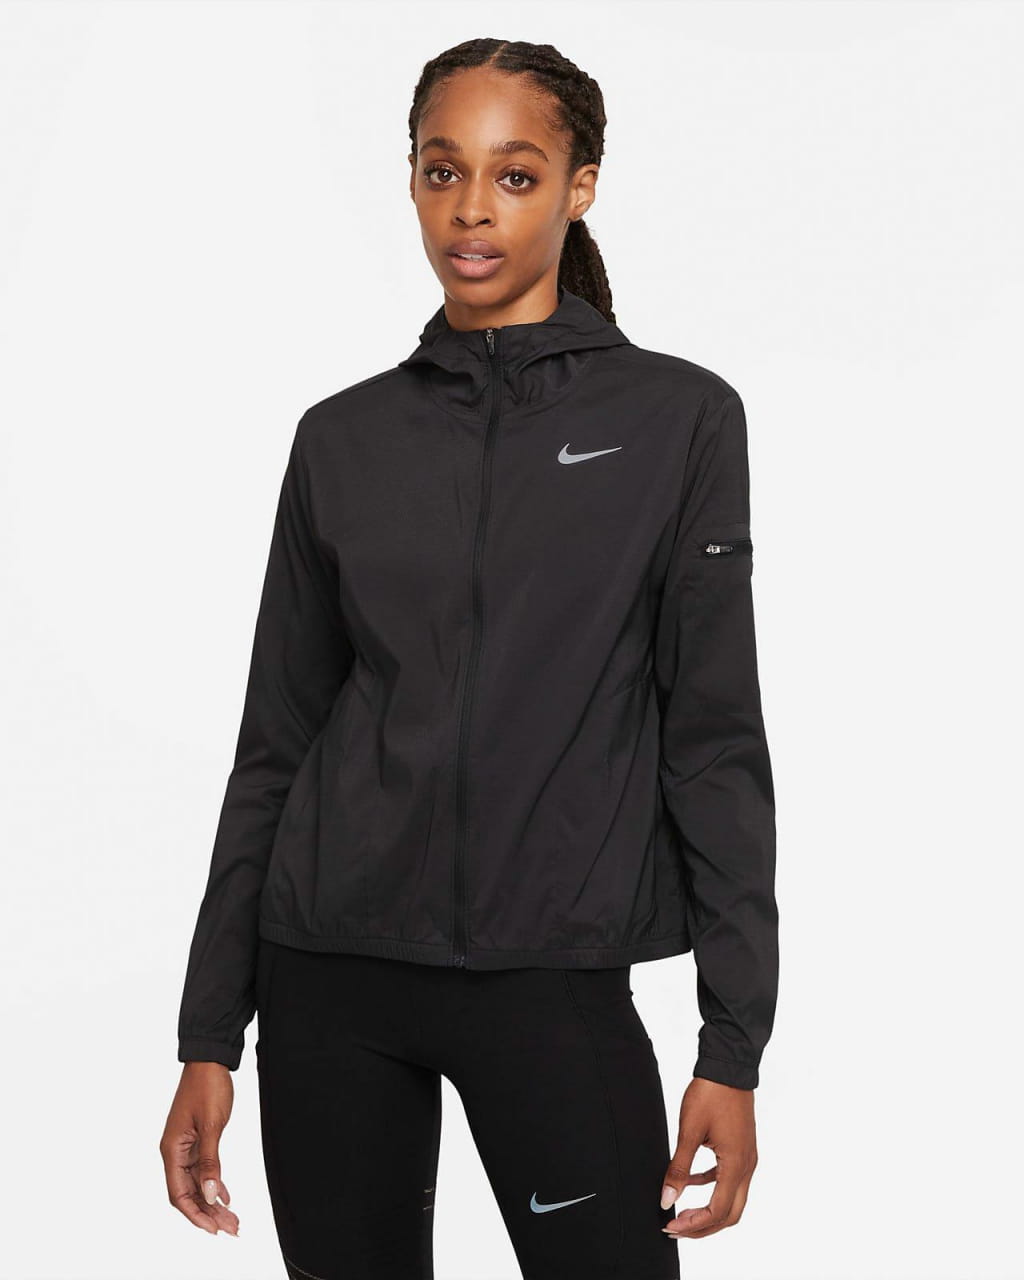 Laufjacke für Frauen Nike Impossibly Light Jacket